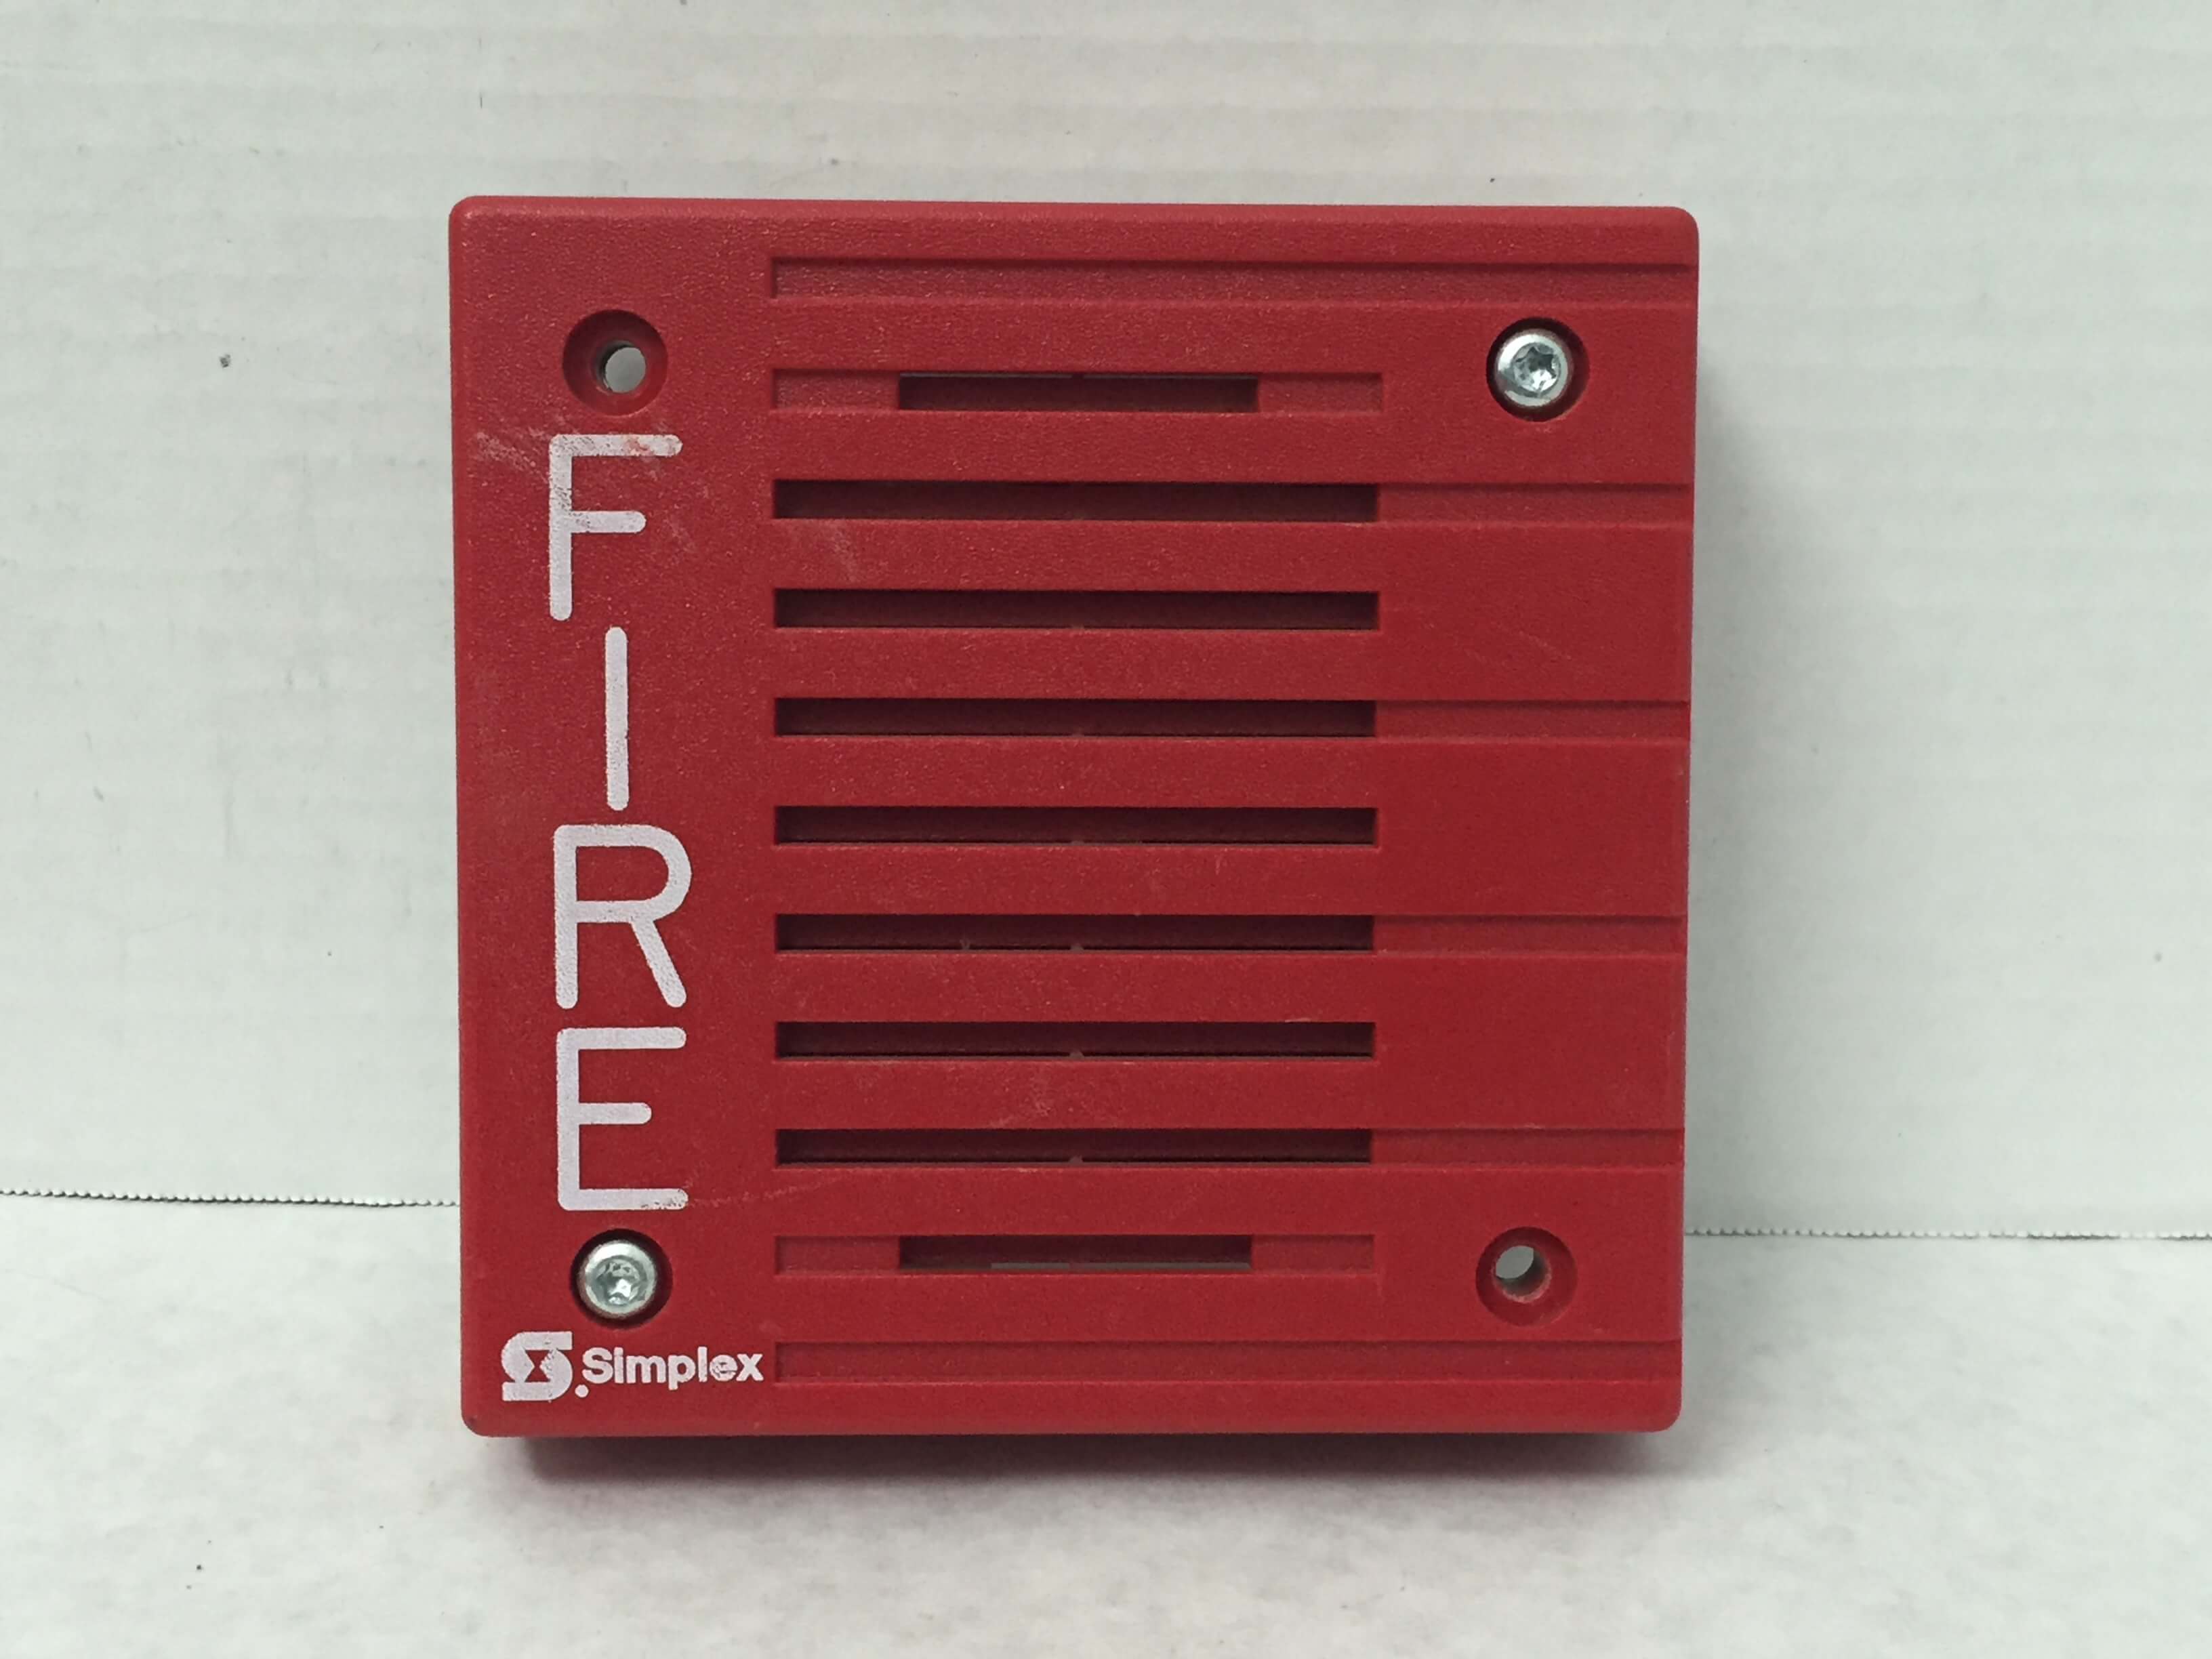 Simplex 4901-9822 - FireAlarms.tv - jjinc24/U8oL0's Fire Alarm ...